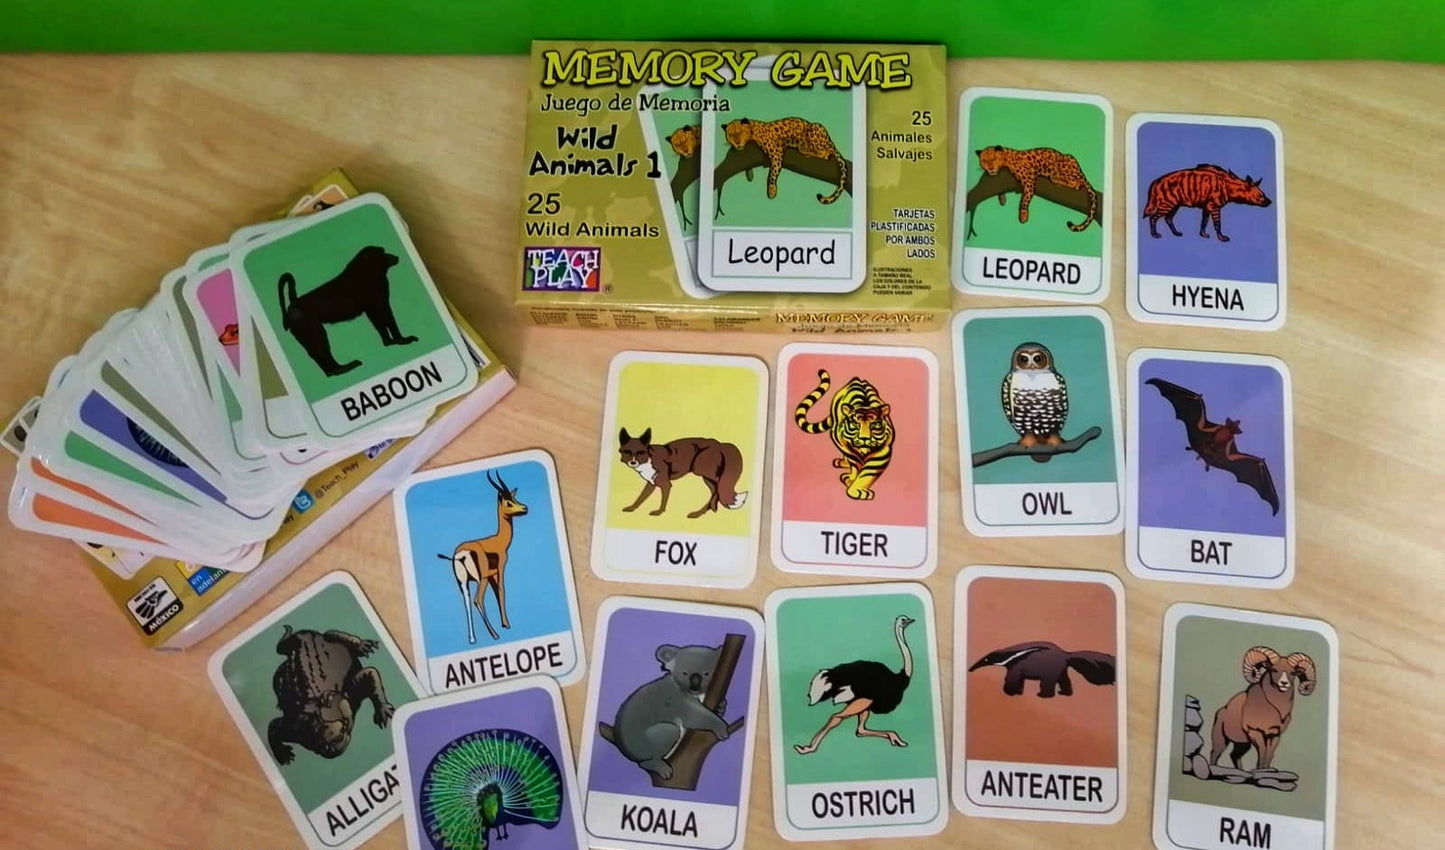 MEMORY GAME WILD ANIMALS 1